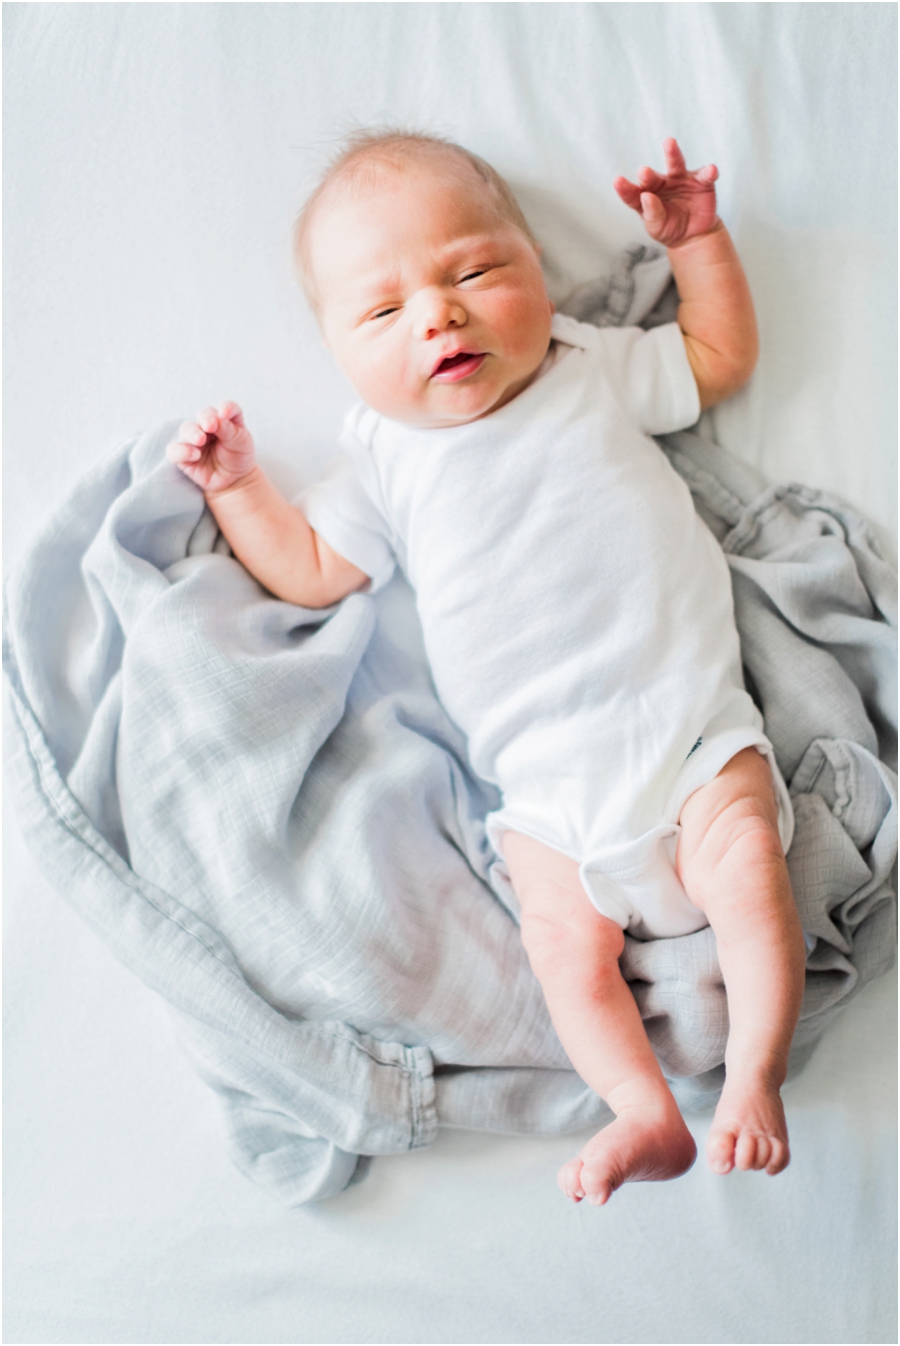 Baby Owen - hillarymuelleck.com/blog